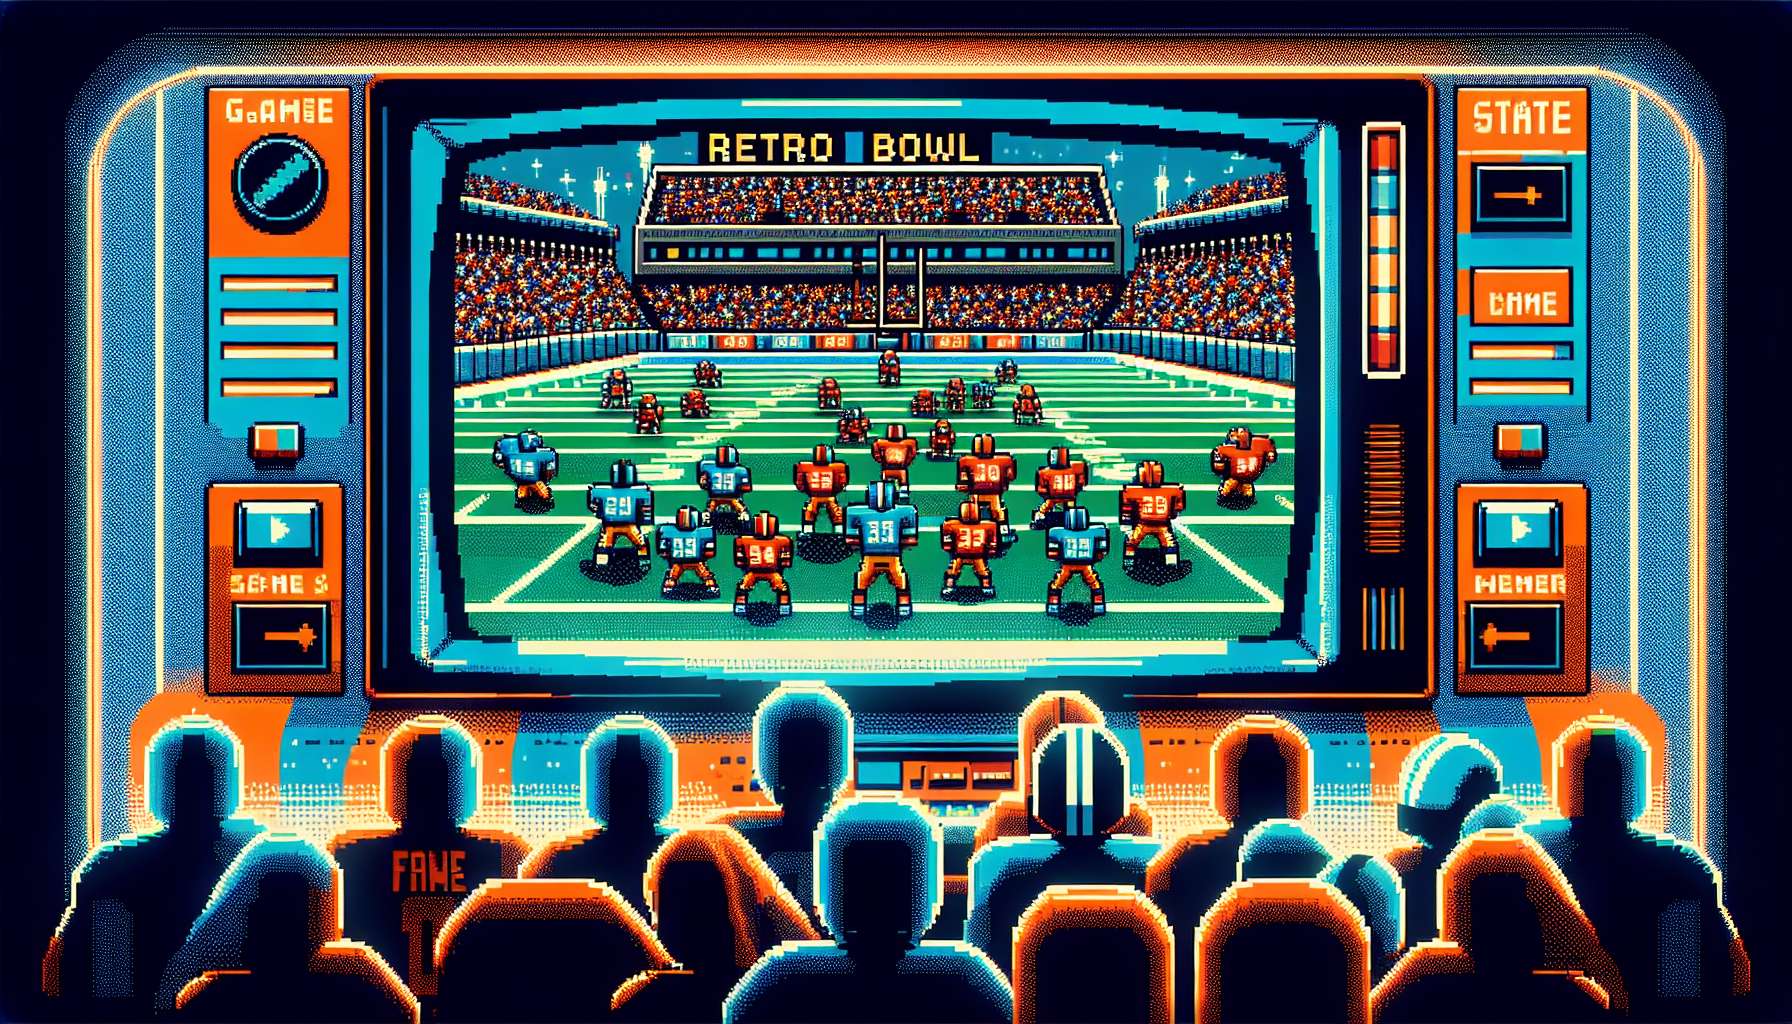 Illustration of Retro Bowl game featuring retro aesthetics